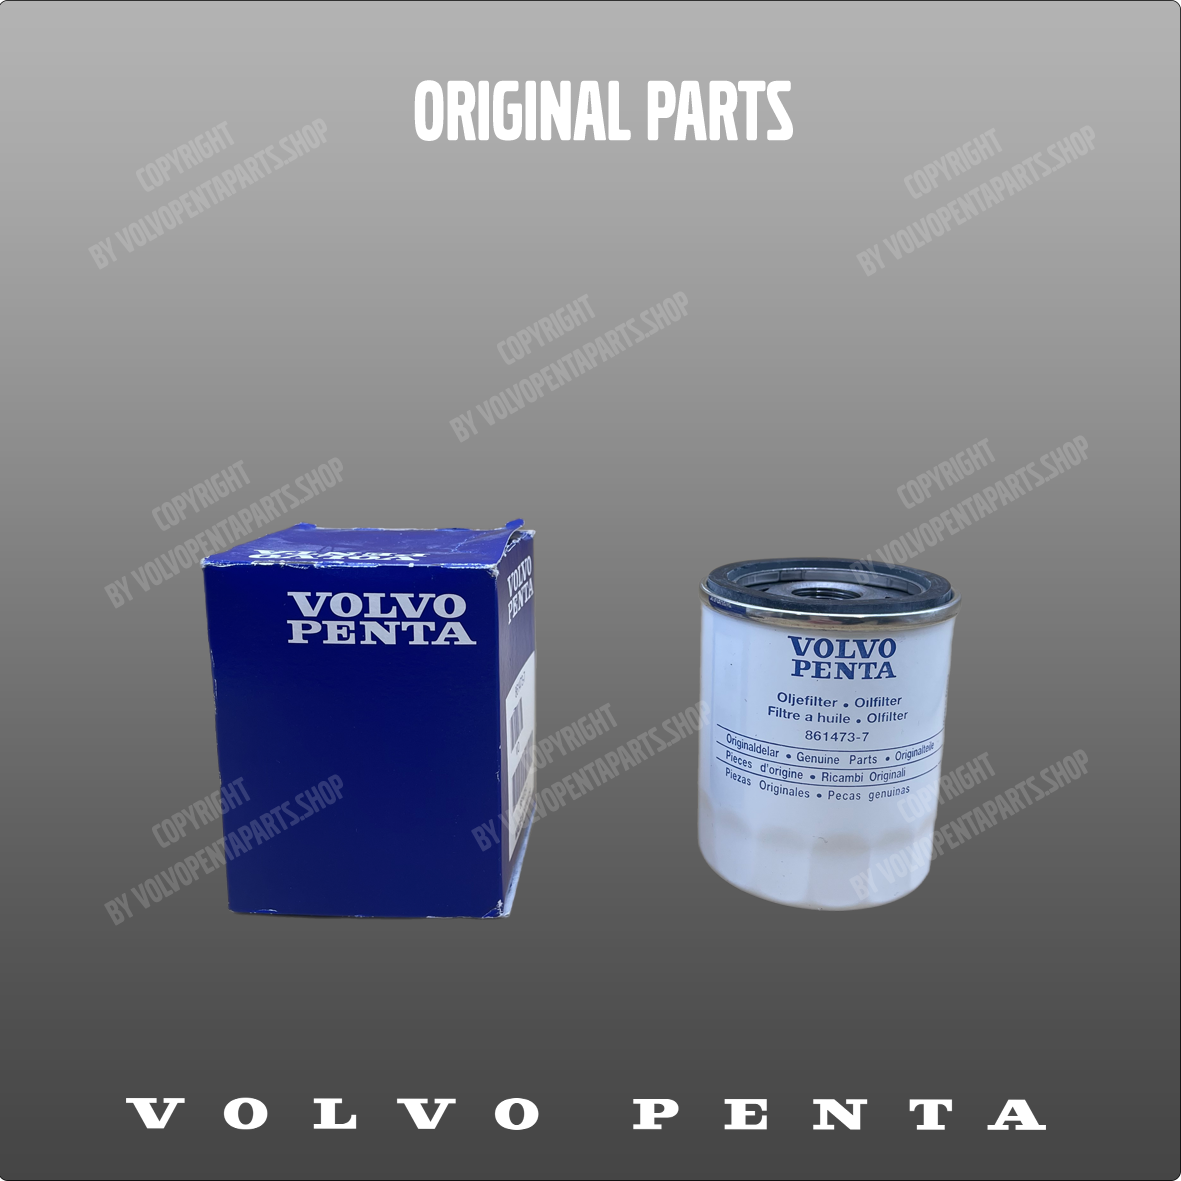 Volvo Penta oil filter 861473